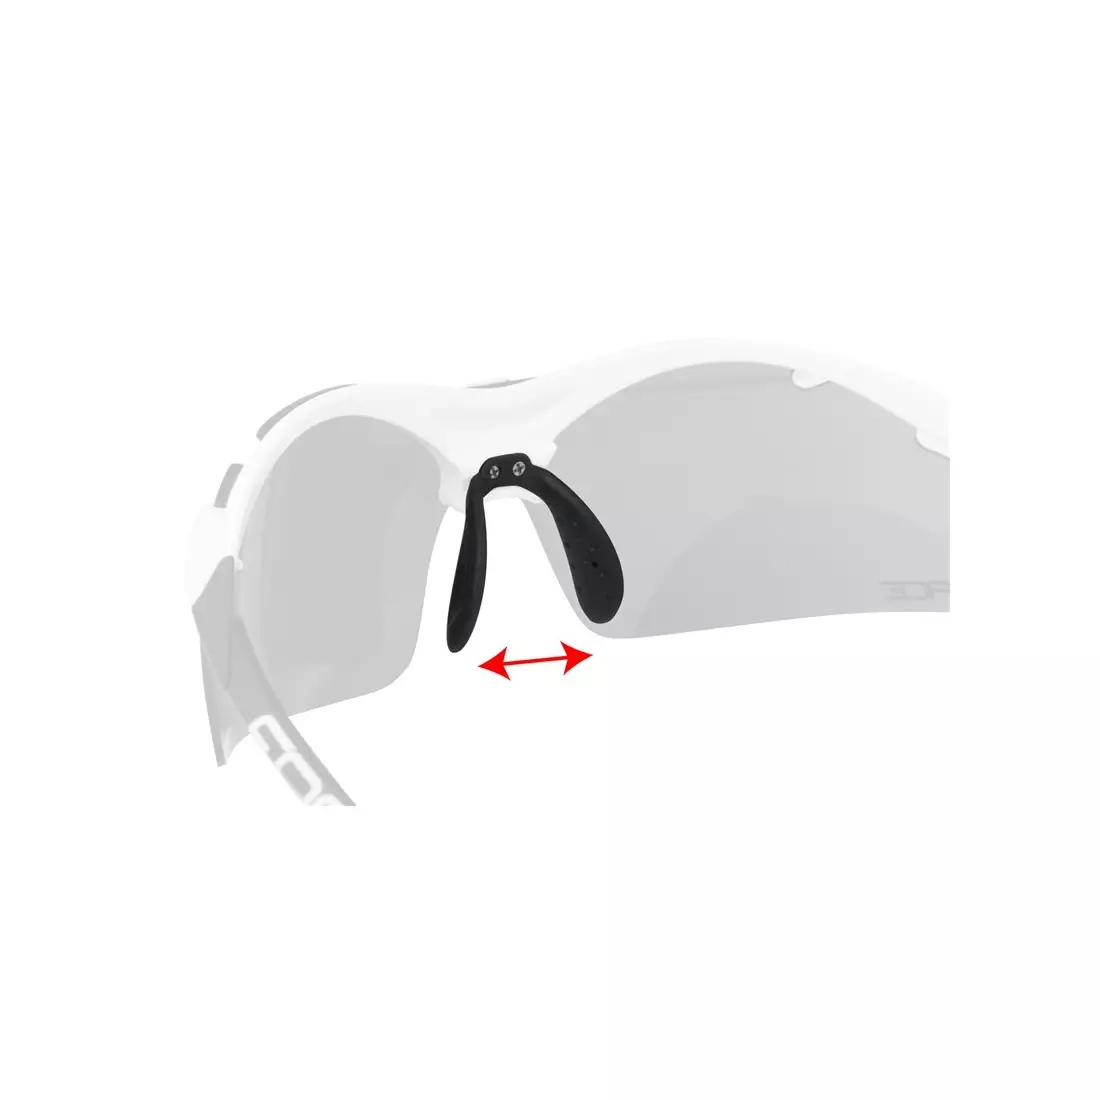 Ochelari FORCE DUKE cu lentile interschimbabile, alb si negru 91021